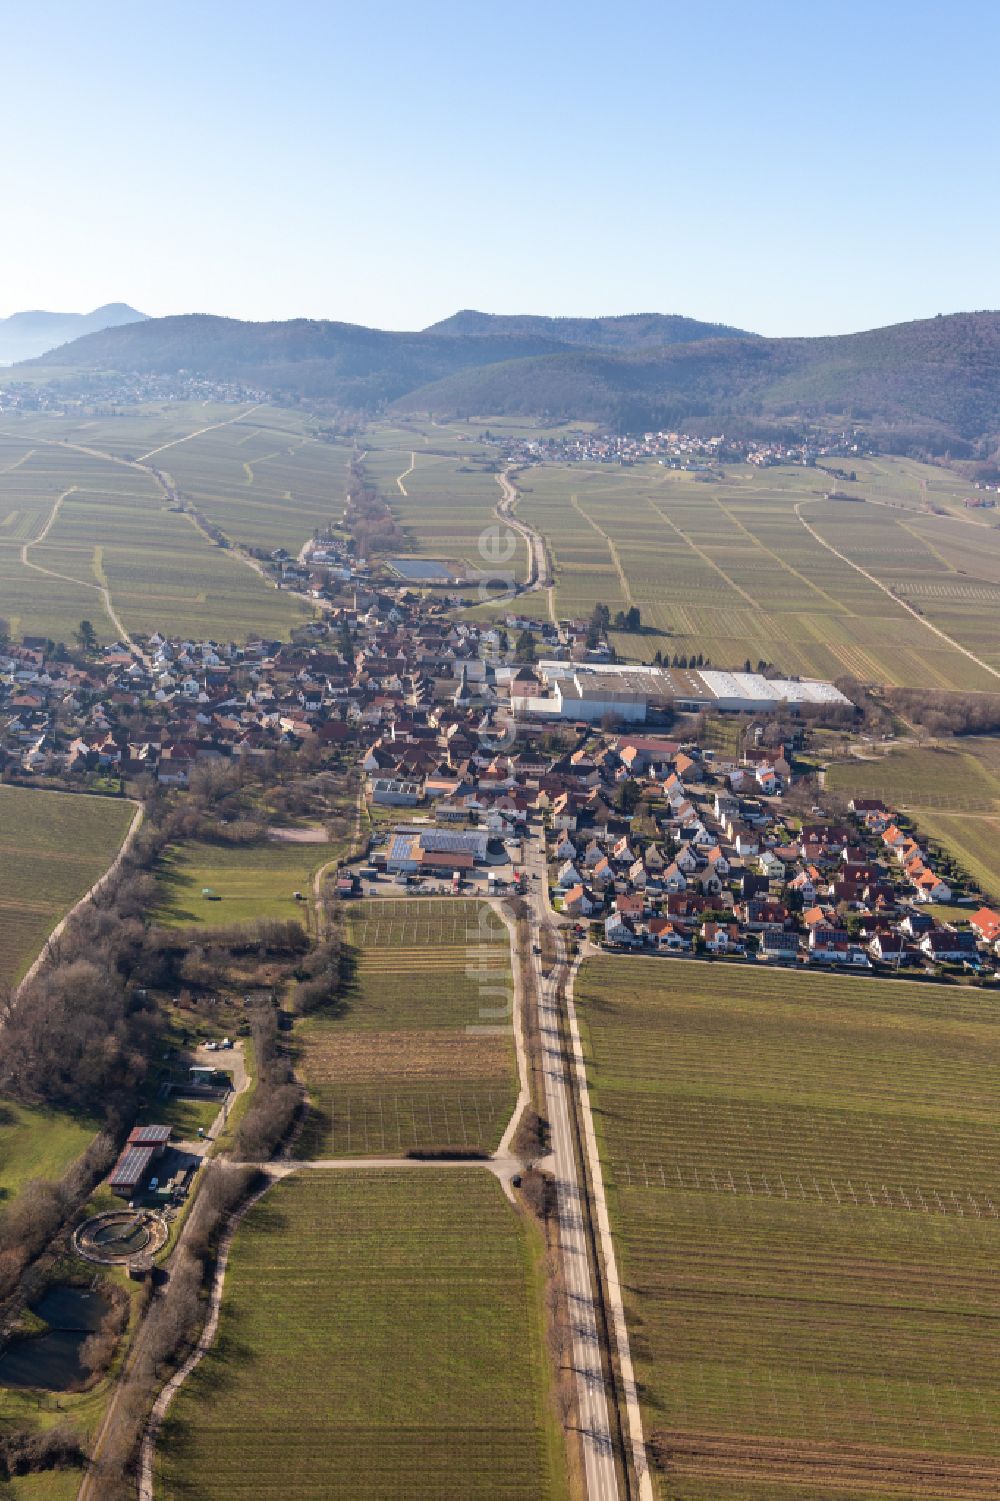 Böchingen von oben - Ortsansicht am Rande von landwirtschaftlichen Feldern in Böchingen im Bundesland Rheinland-Pfalz, Deutschland